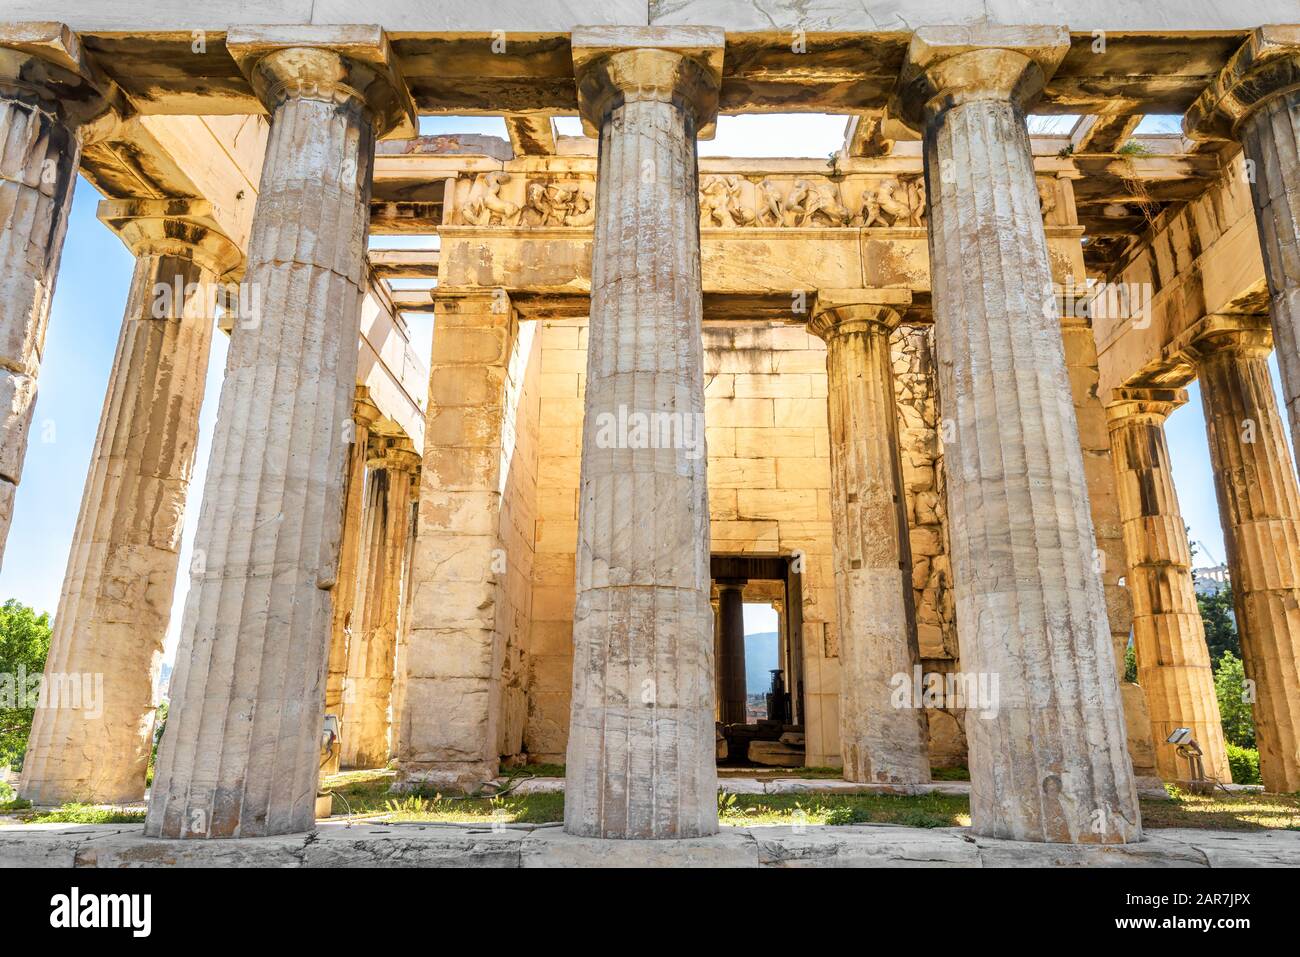 Tempel des Hephaestus in Sonnenschein, Athen, Griechenland. Es ist eines der wichtigsten Wahrzeichen Athens. Sonniger Blick auf den antiken griechischen Tempel von Hephaestus Stockfoto